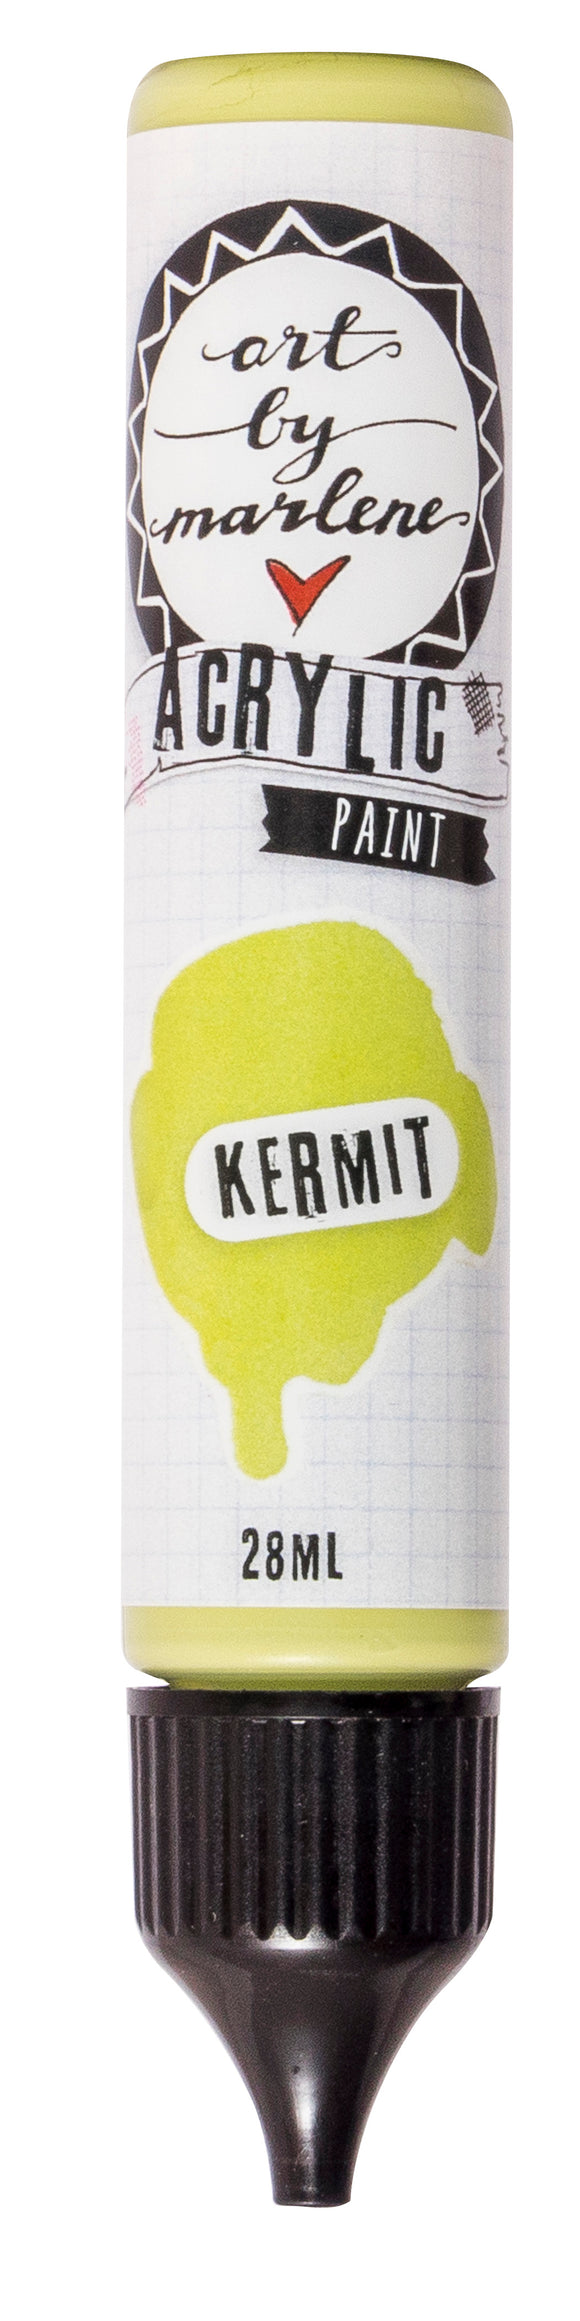 Acrylic Paint - Kermit : (ABM) ACP12